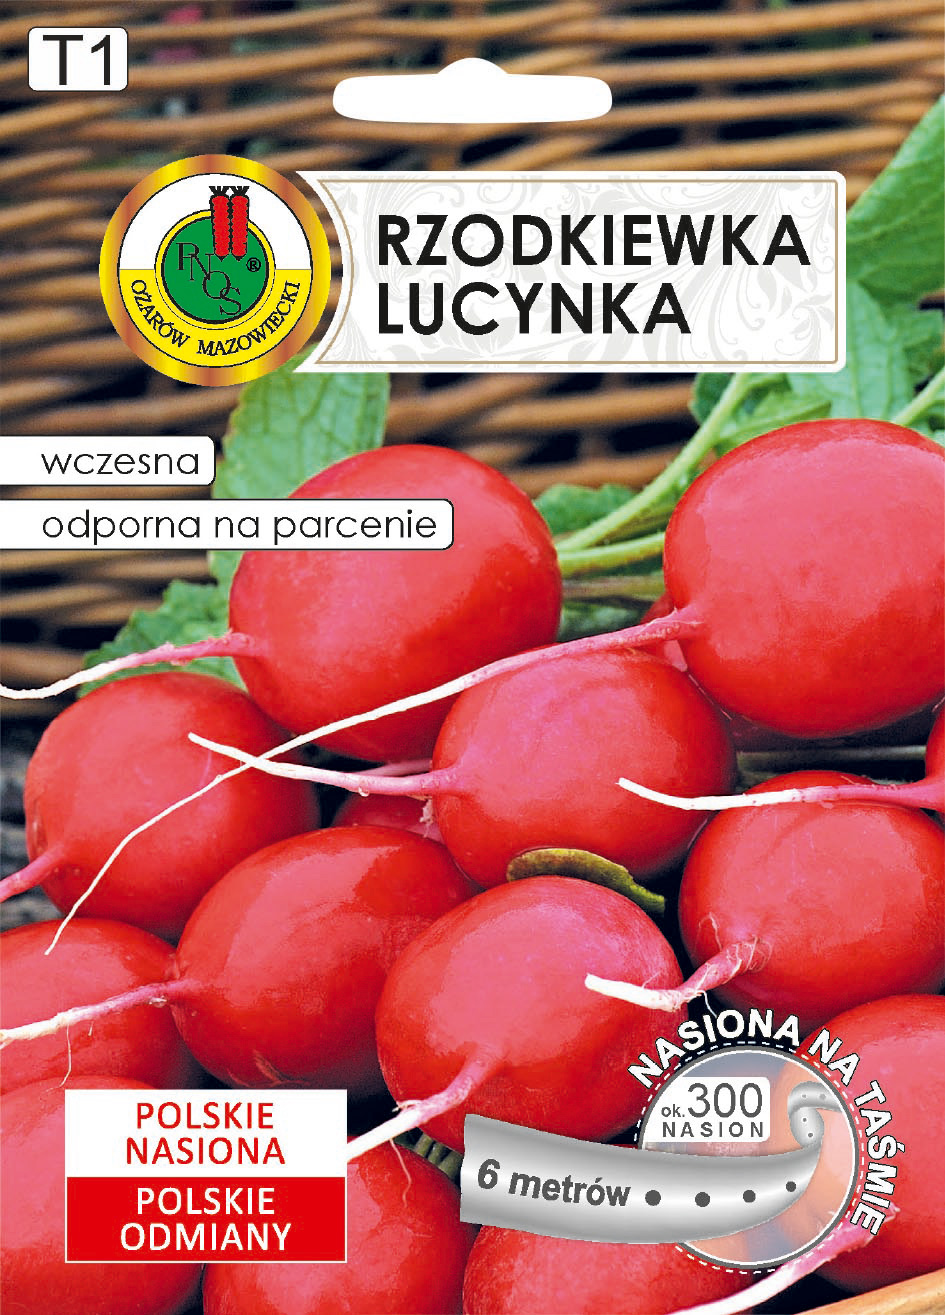 Rzodkiewka Lucynka nasiona na taśmie PNOS 6m